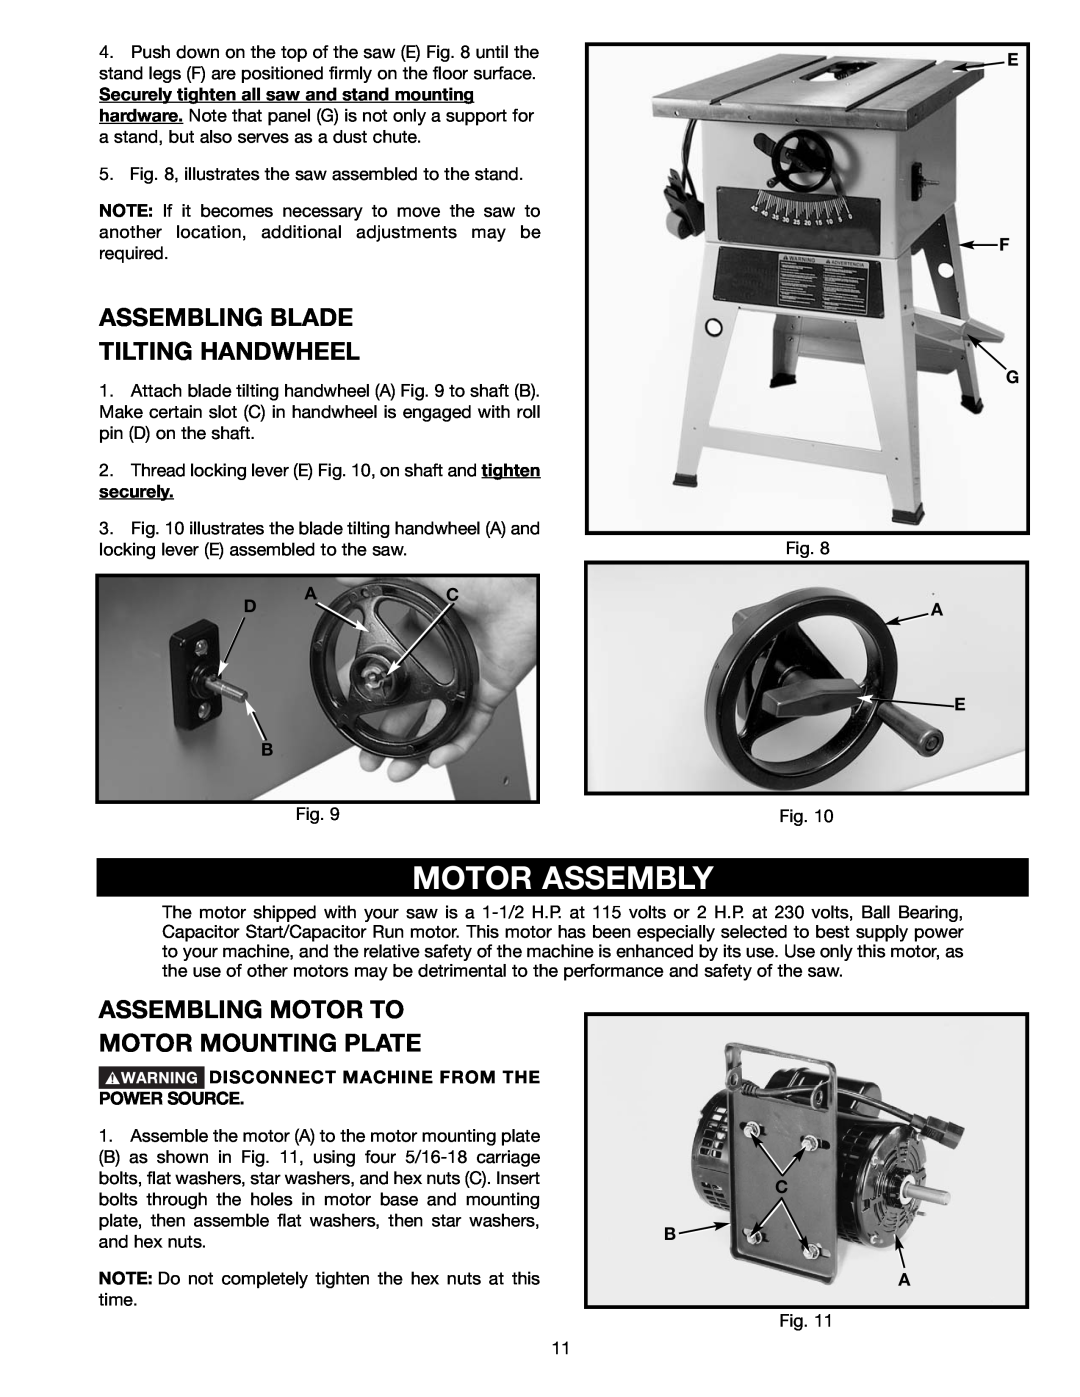 Delta 36-465 Motor Assembly, Assembling Blade Tilting Handwheel, Assembling Motor To Motor Mounting Plate, E F G, C B A 